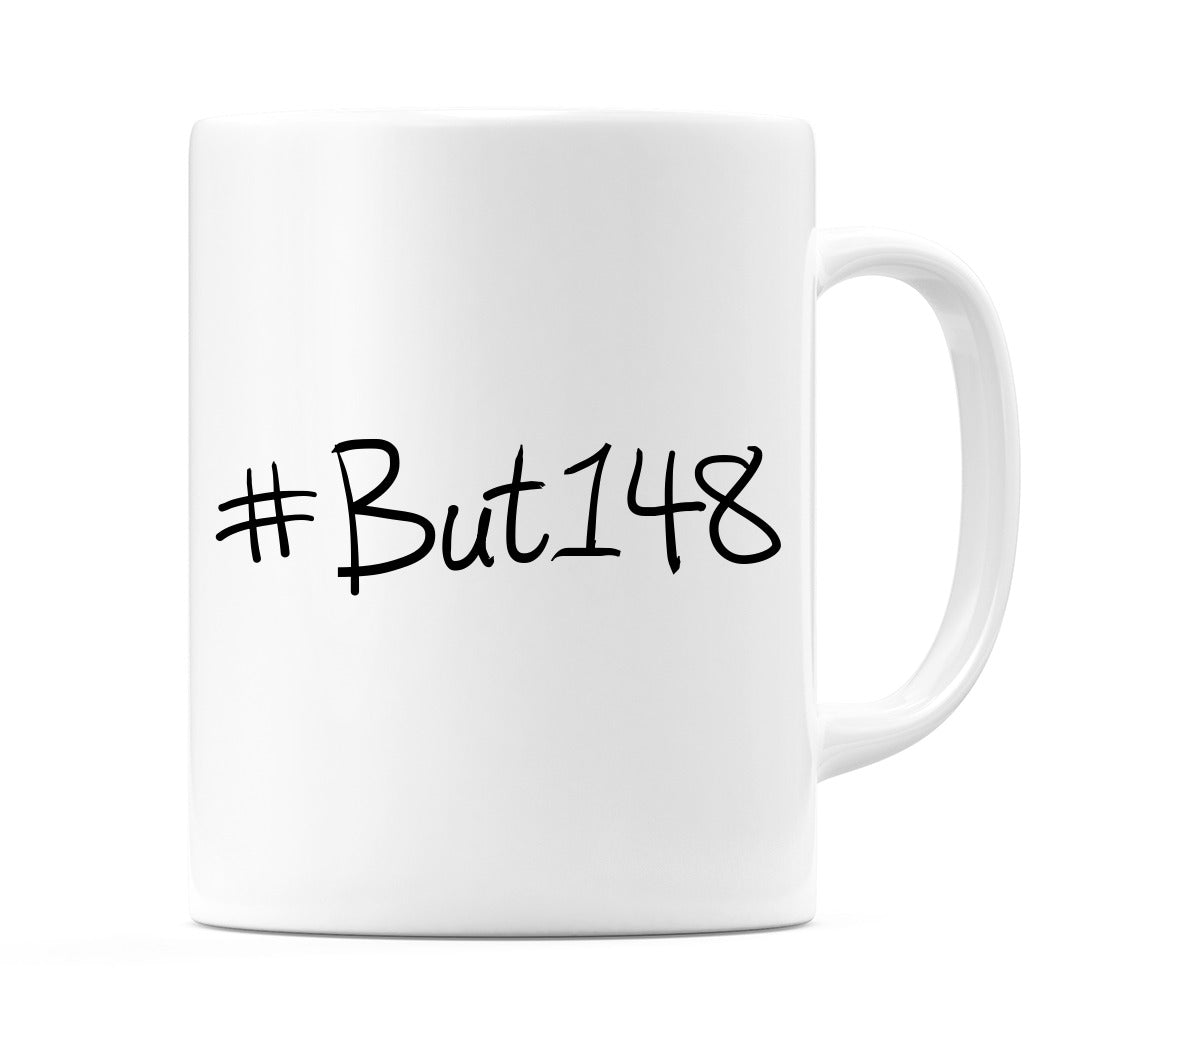 #But148 Mug